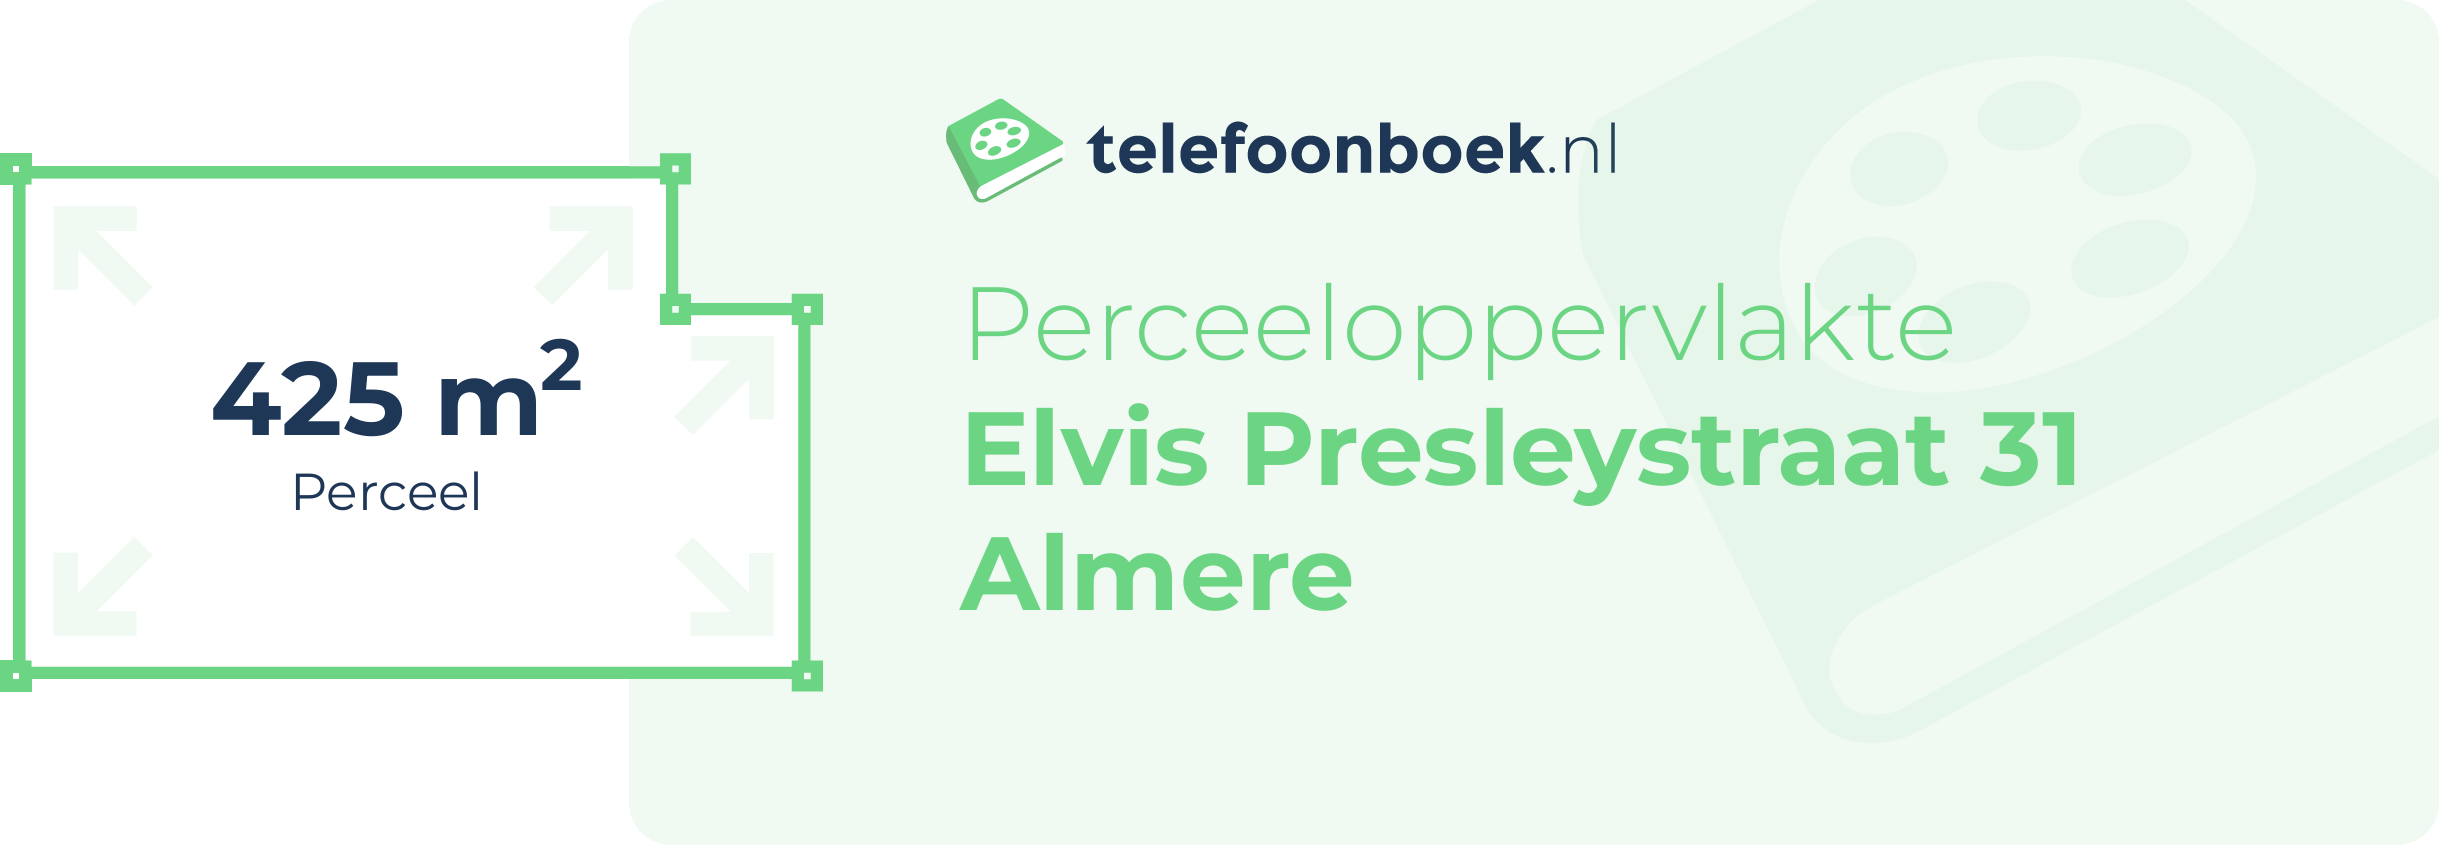 Perceeloppervlakte Elvis Presleystraat 31 Almere